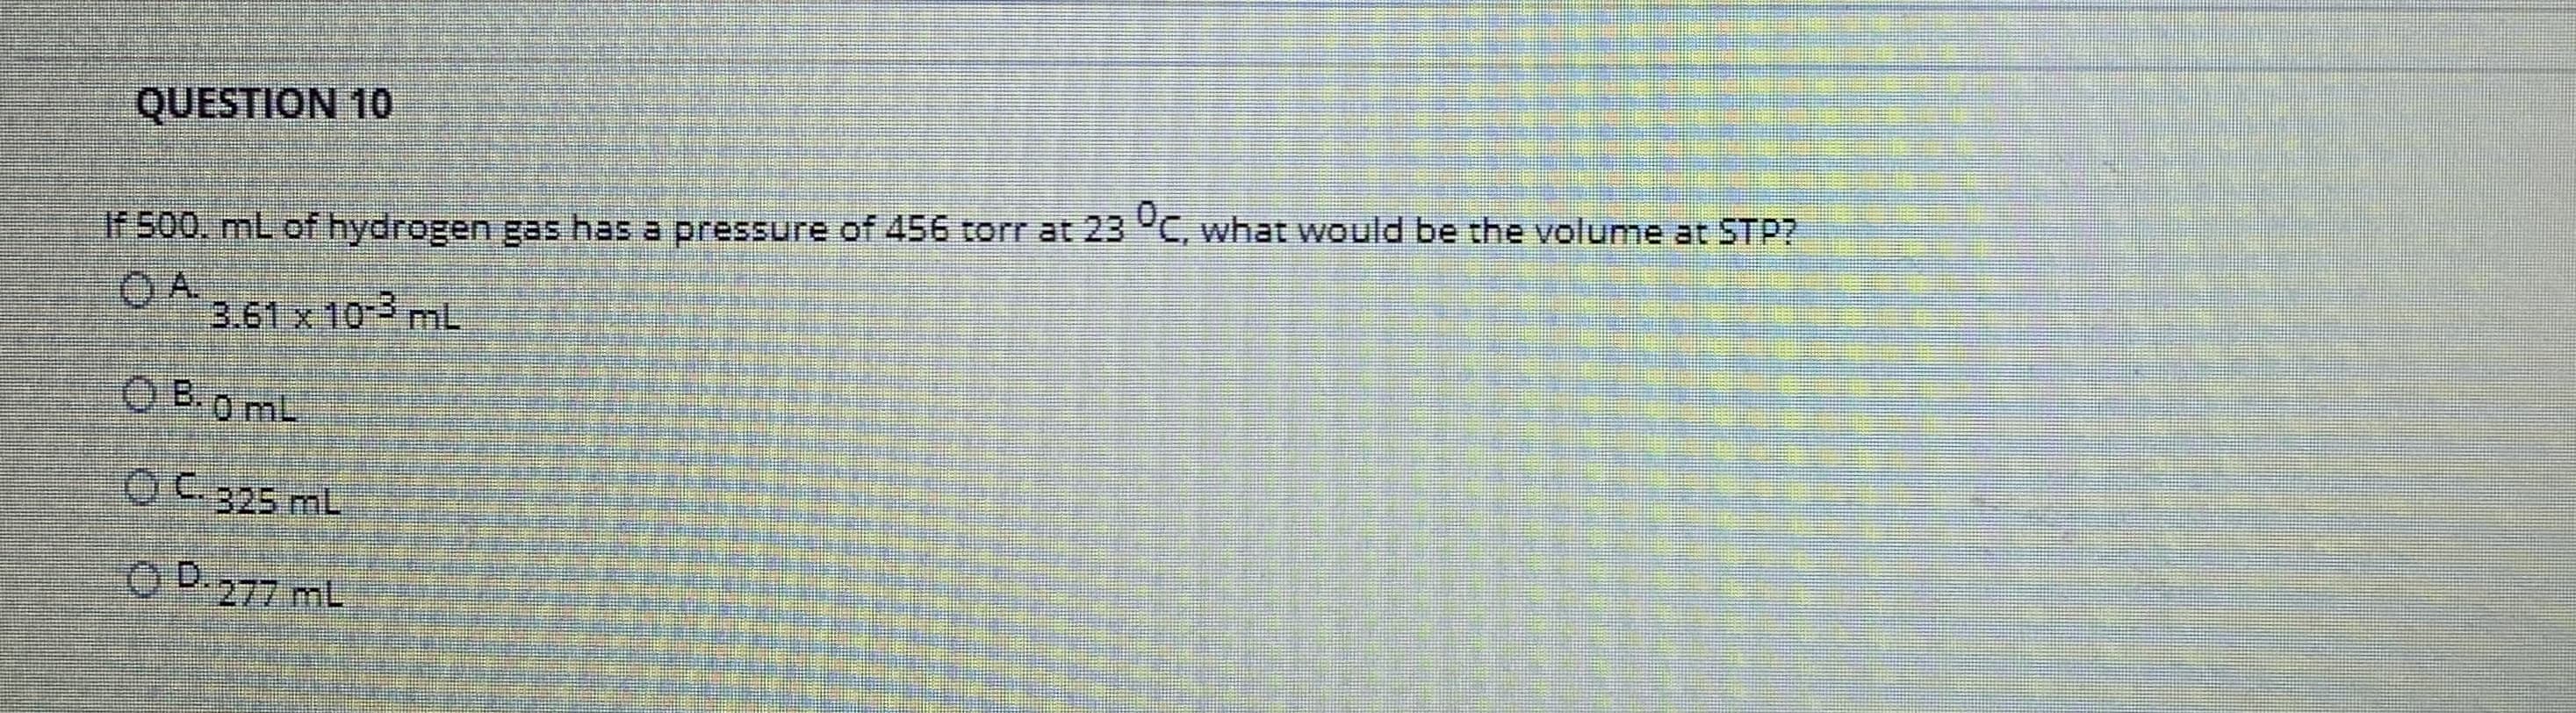 If 500, mL of hydrogen gas has a pressure of 456 torr at 23 C, what would be the volume at STP?
OA.
3.61 x 10-3 mL
O B.0 mL
OC.325 mL
OD.
O D.277 mL
